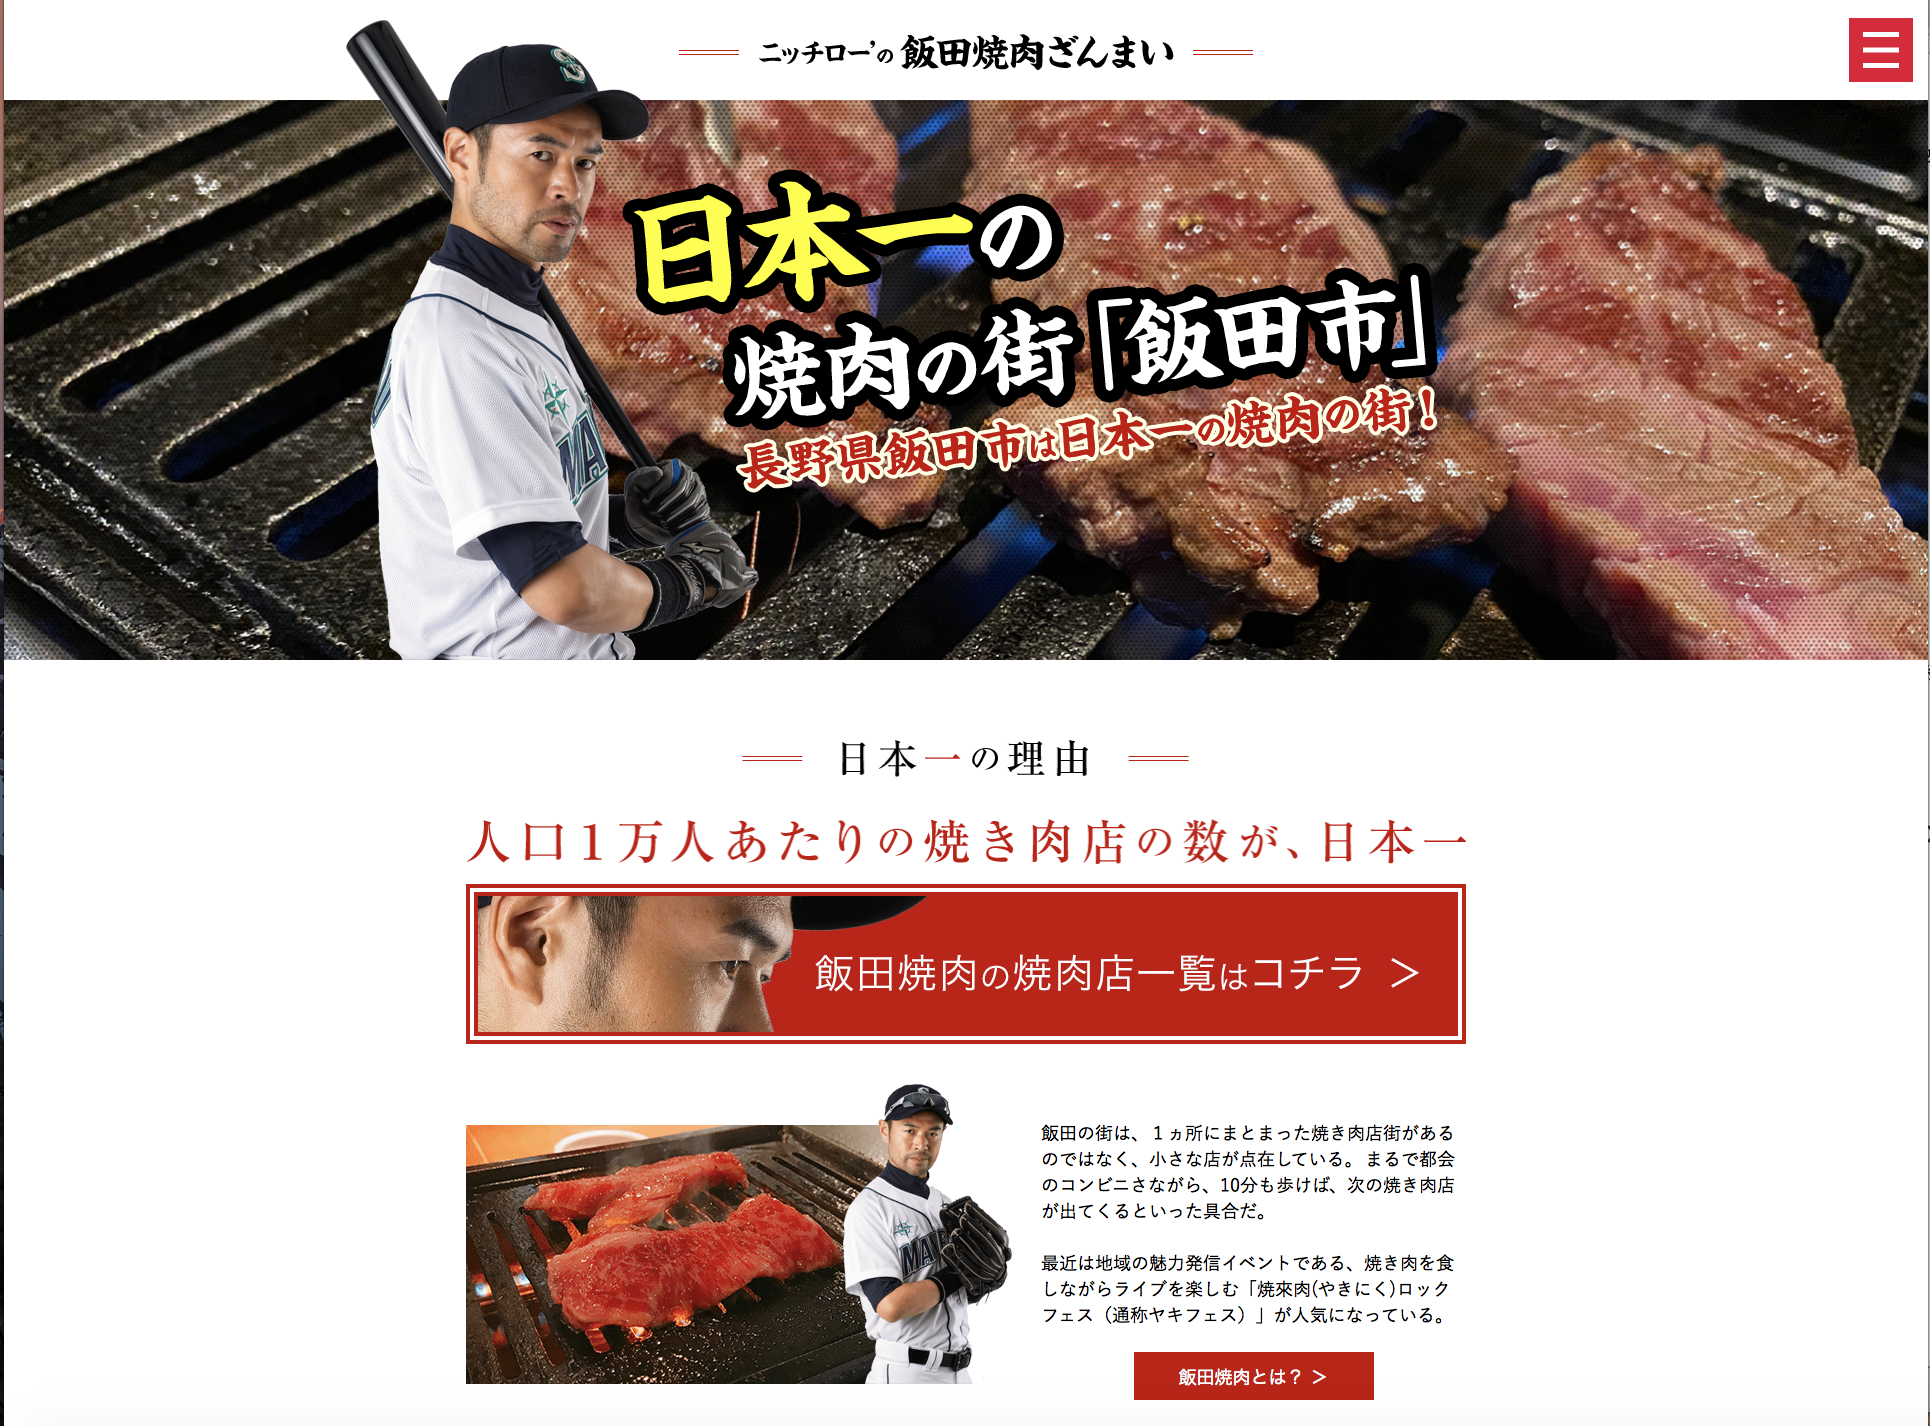 日本一の焼肉の街飯田市の焼肉店が分かるグルメサイト ニッチロー の飯田焼肉ざんまい のサイトをリリース 株式会社デュアリスのプレスリリース